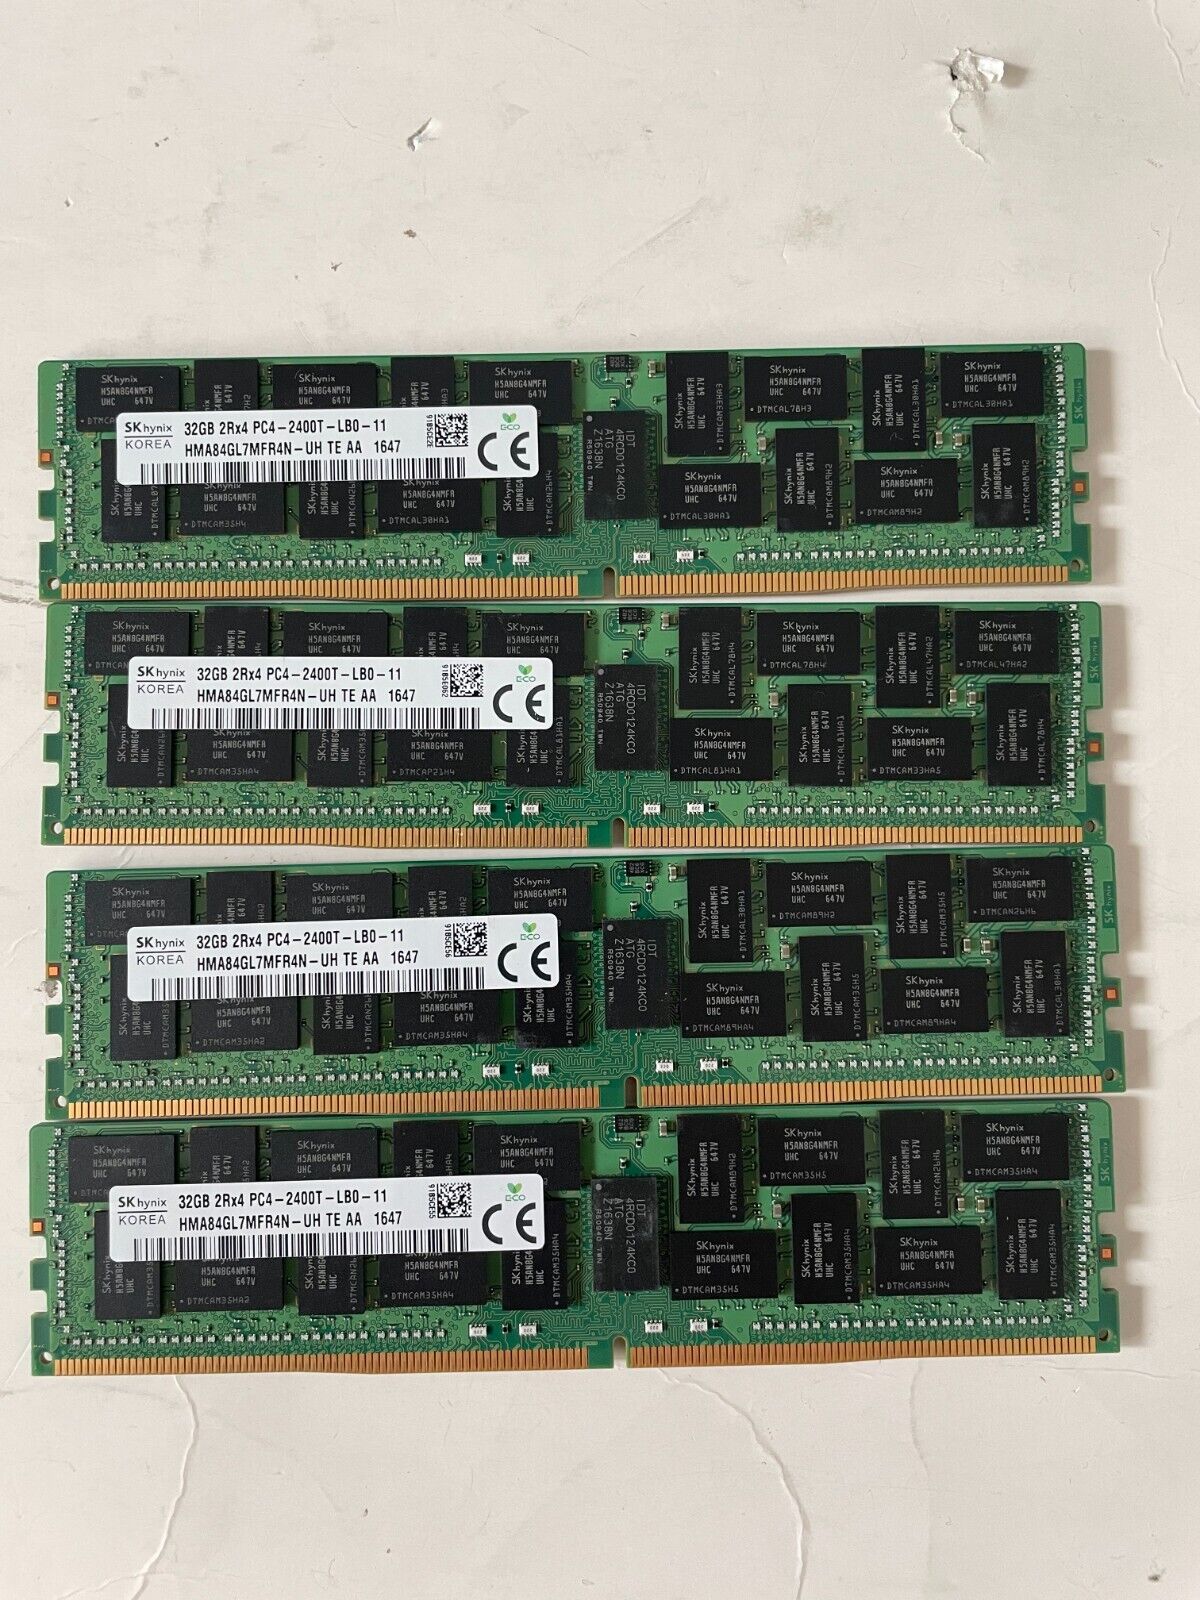 HYNIX 128GB HMA84GL7MFR4N-UH  4x32GB 2RX4 PC4-2400T DDR4 SERVER RAM MEMORY